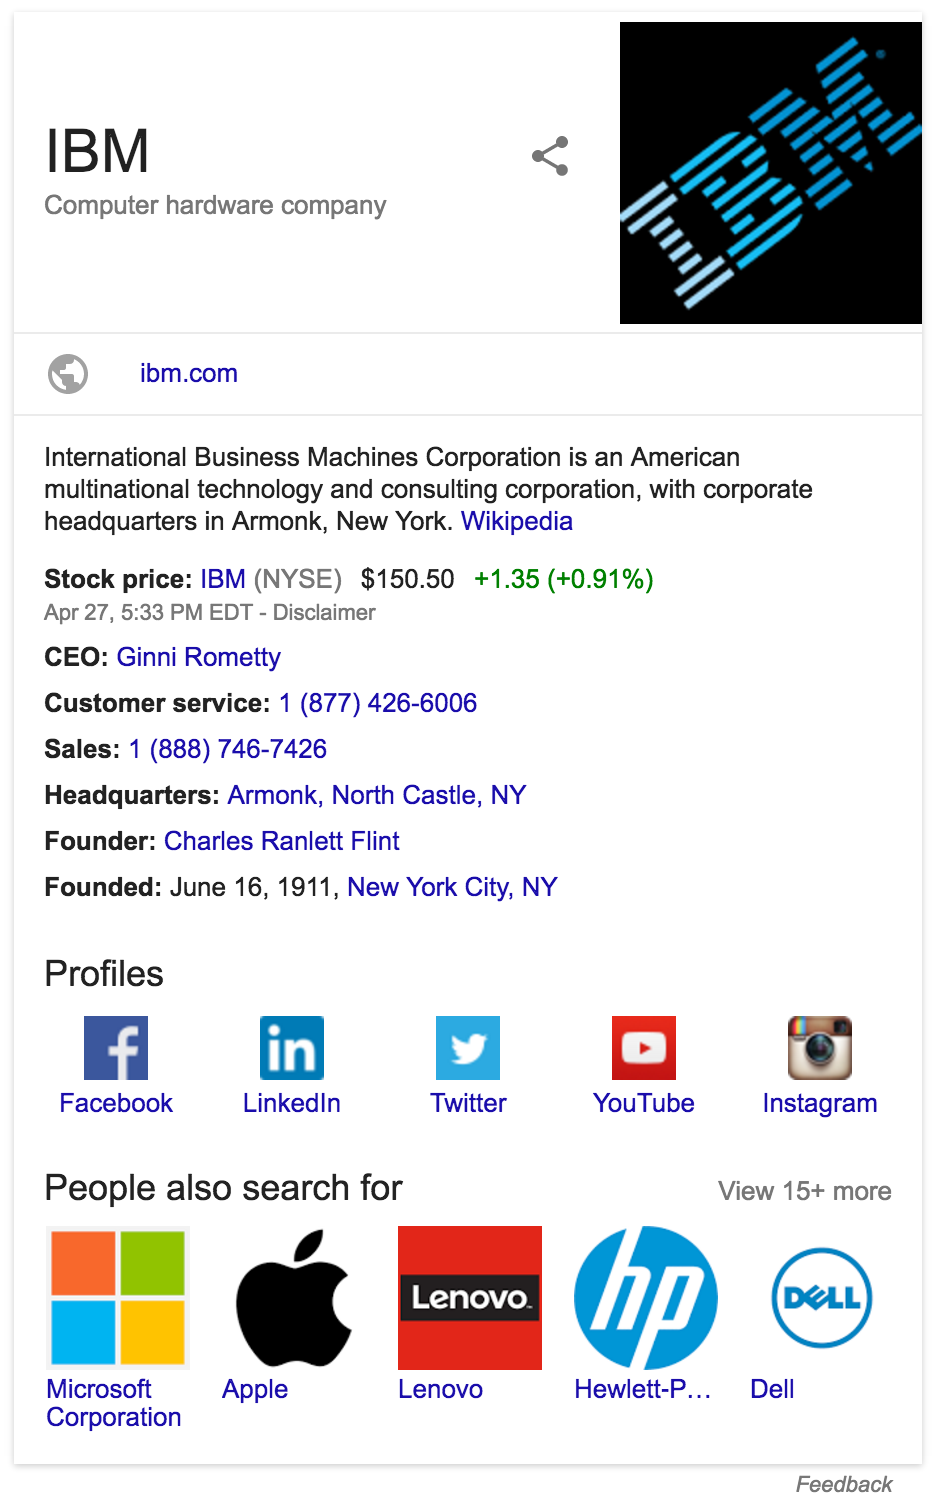 การ์ดความรู้ของ Google ในผลการค้นหาของ Search